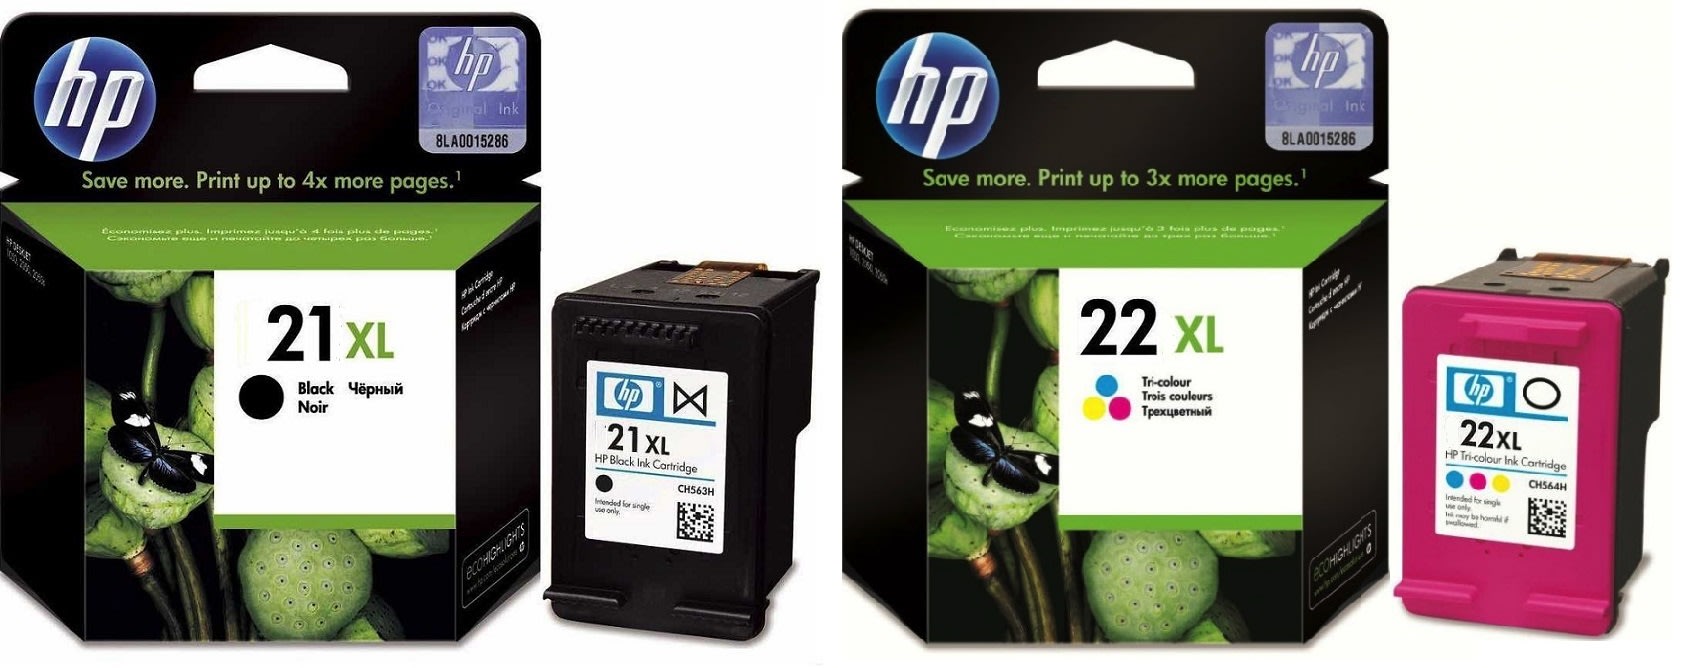 Картриджи hp 21XL 22XL для HP Officejet 4314. Купить комплект оригинальных чернил.